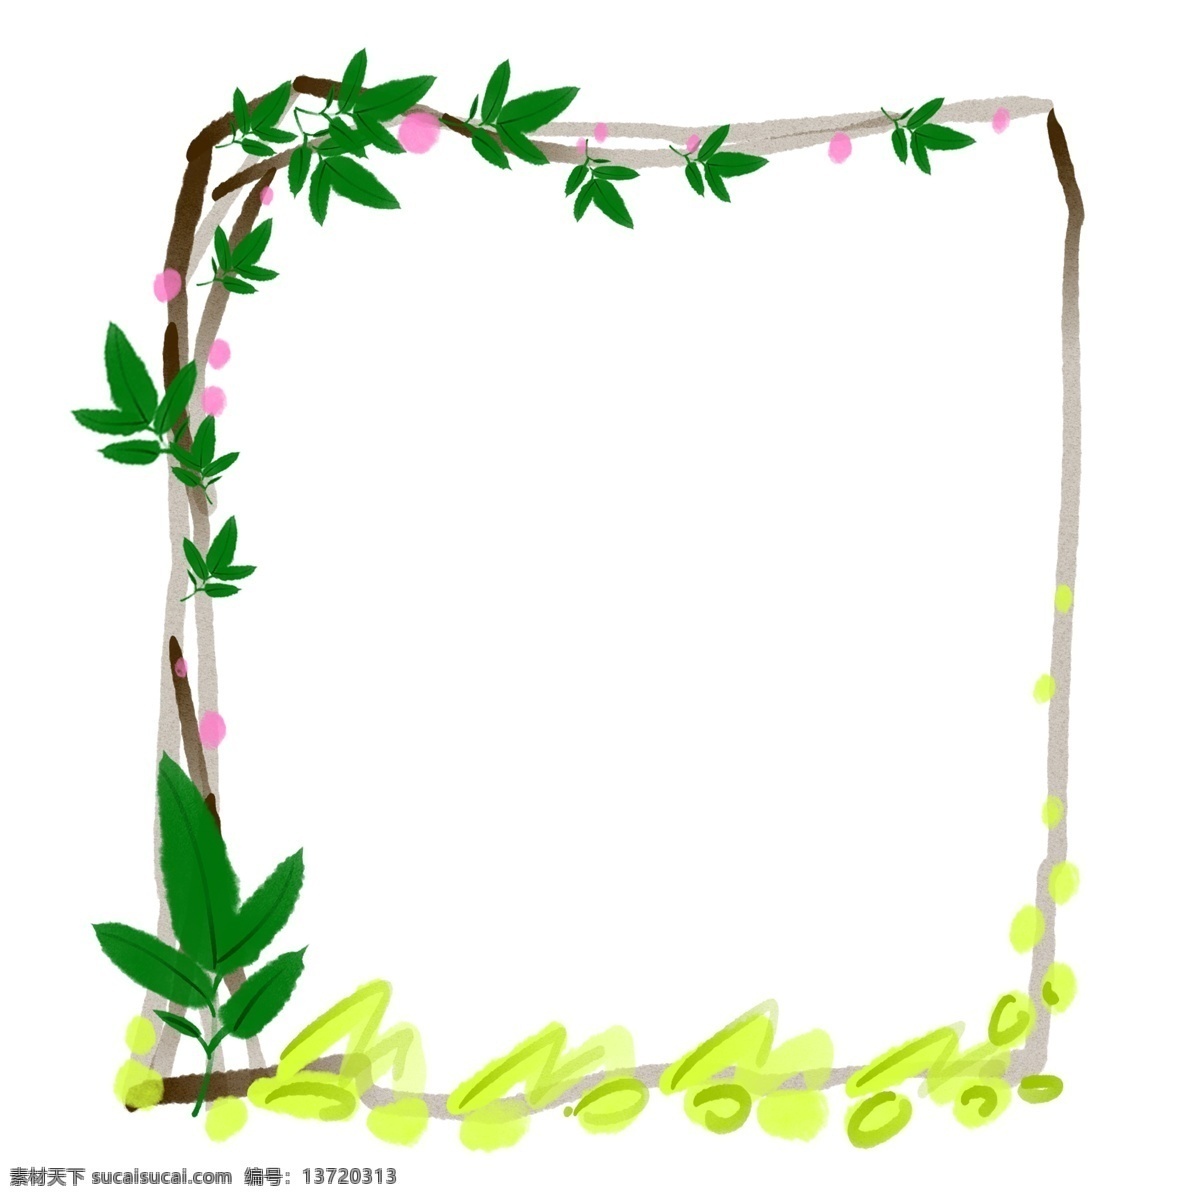 美丽 植物 叶子 插画 美丽的叶子 卡通边框 植物边框 植物叶子 植物花朵 创意边框 植物的边框